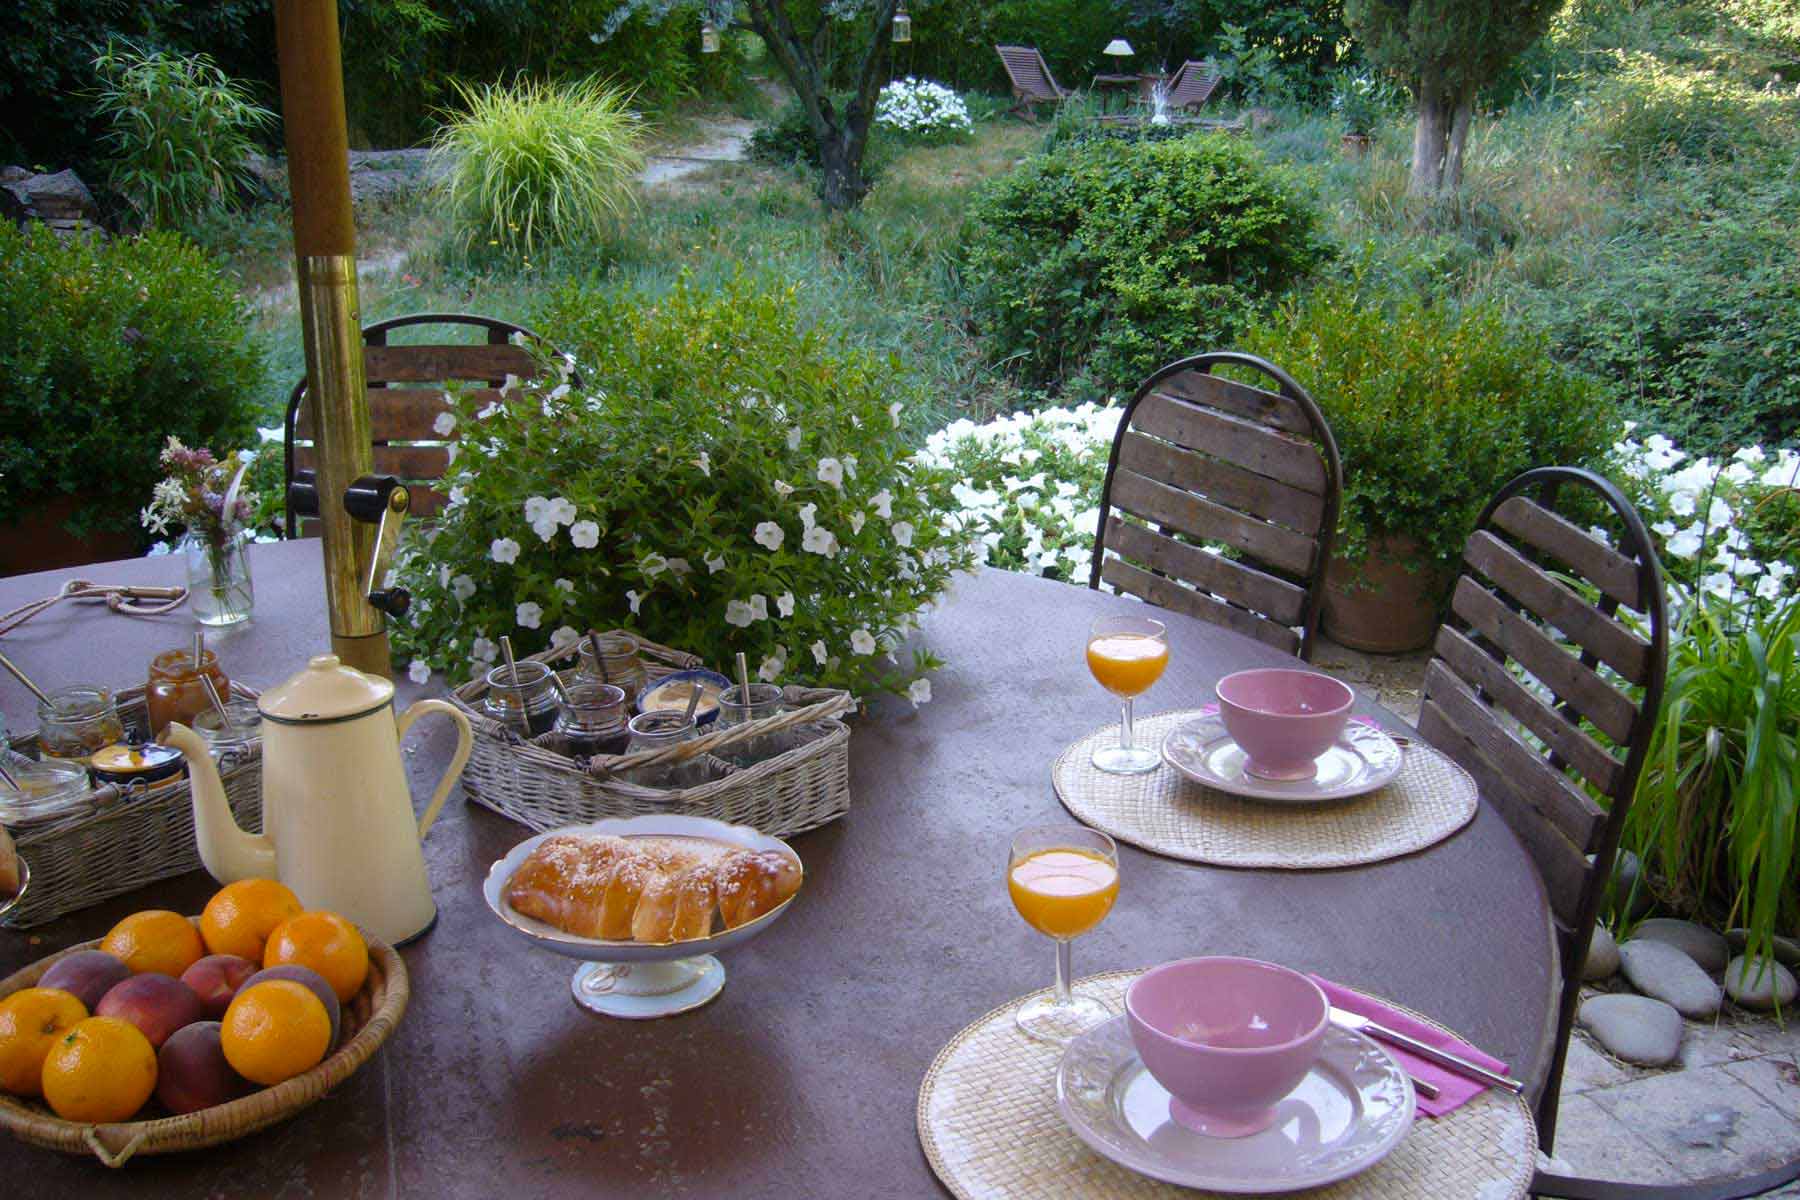 breakfast on the terrace.